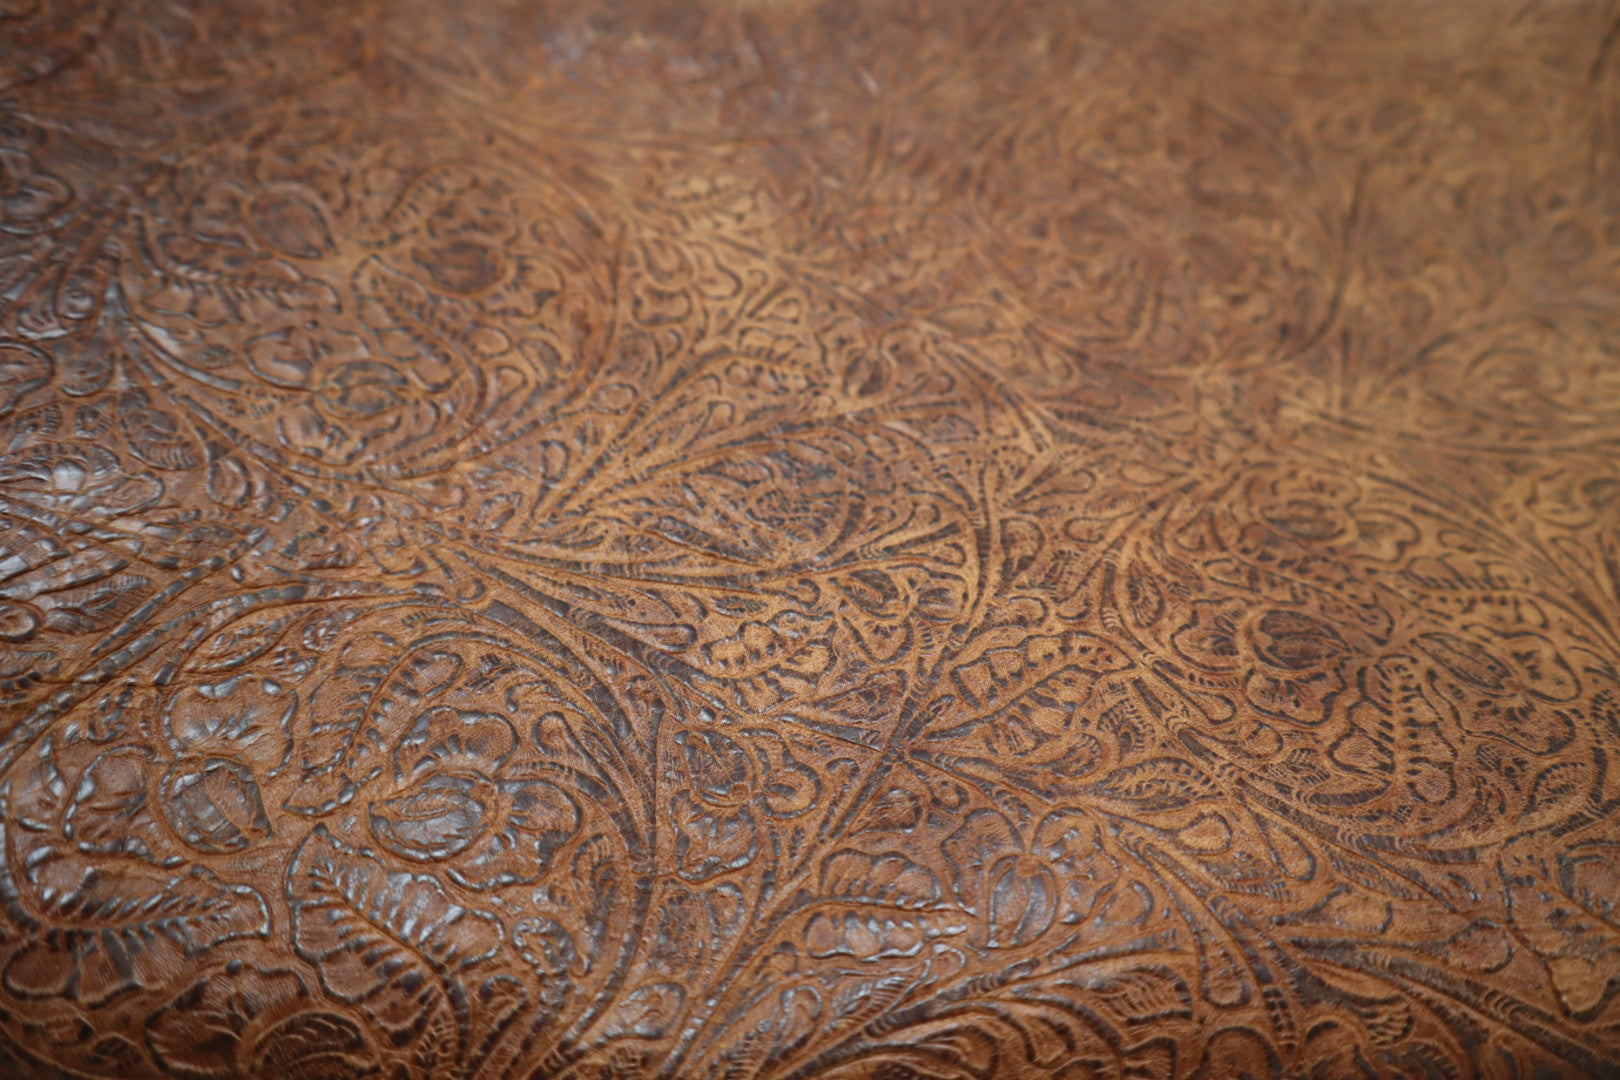 VEG TAN floral metallic brown leather skin, western printed vintage hide